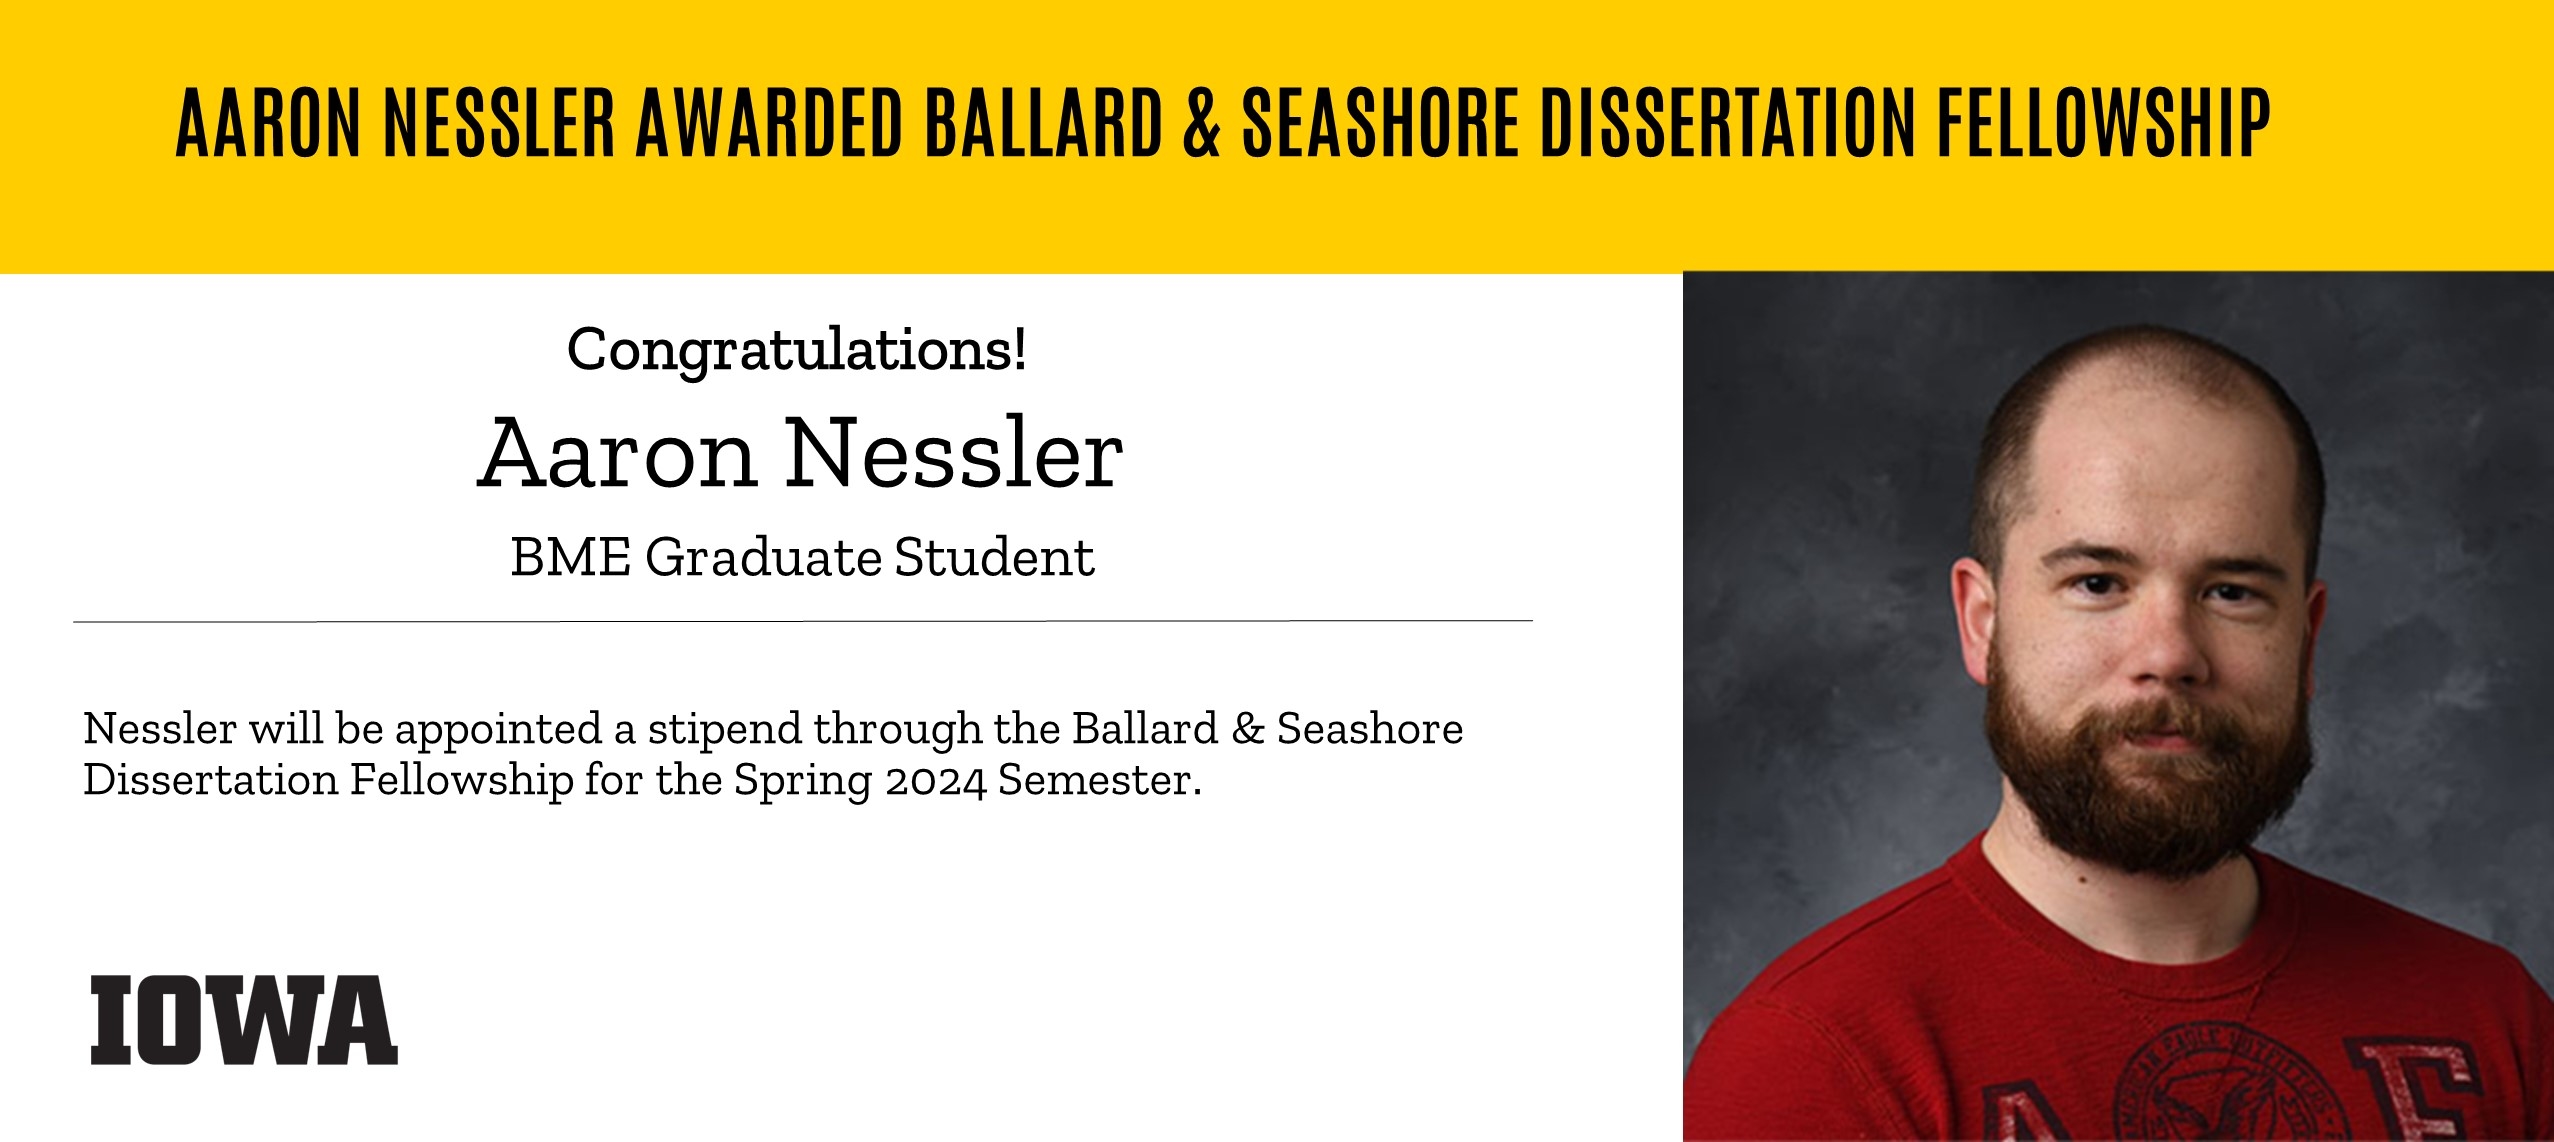 Ballard & Seashore Dissertation Fellowship Announcement - Nessler